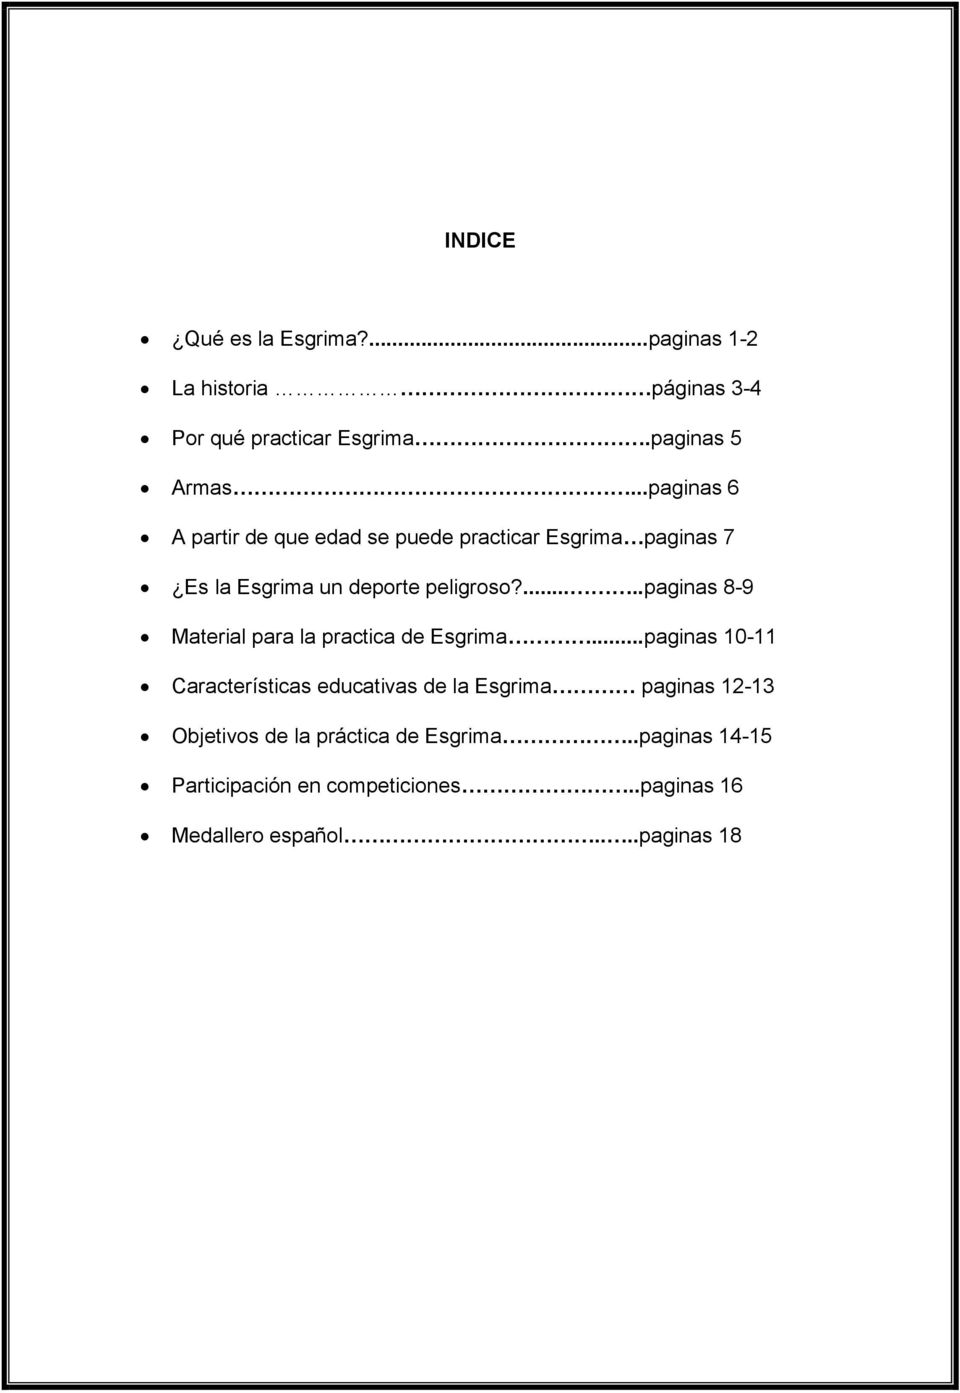 .....paginas 8-9 Material para la practica de Esgrima.